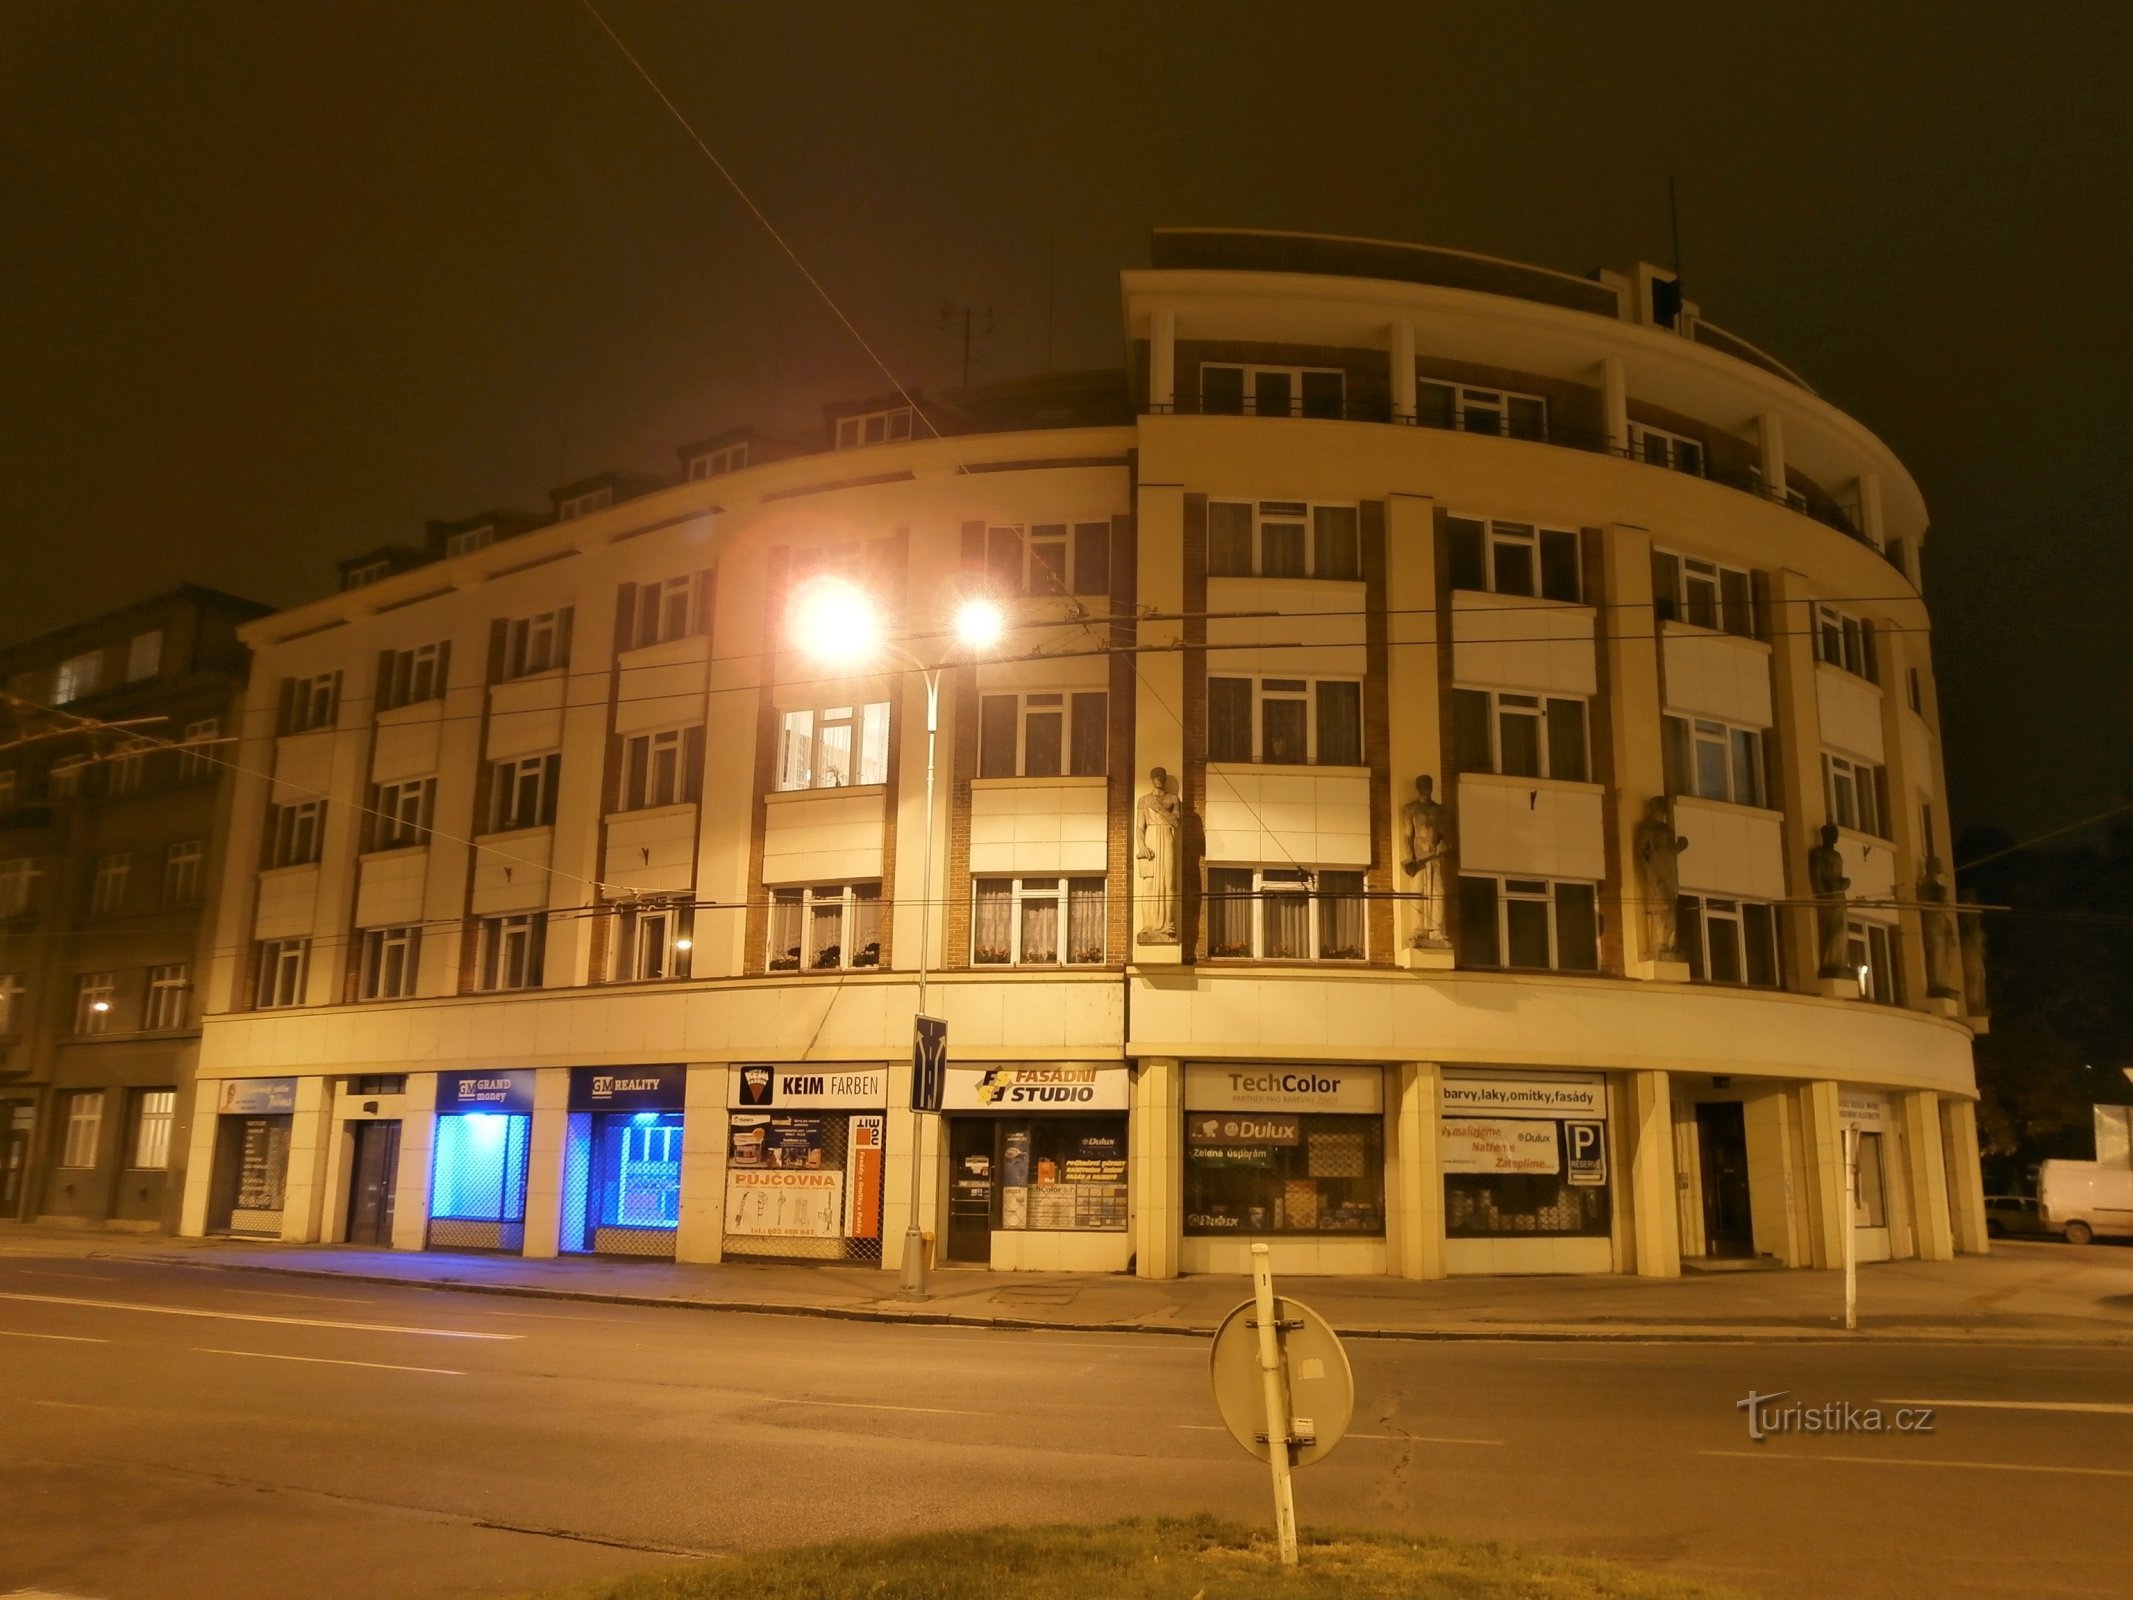 捷克第一家相互保险公司（Hradec Králové，11.11.2012 年 XNUMX 月 XNUMX 日）